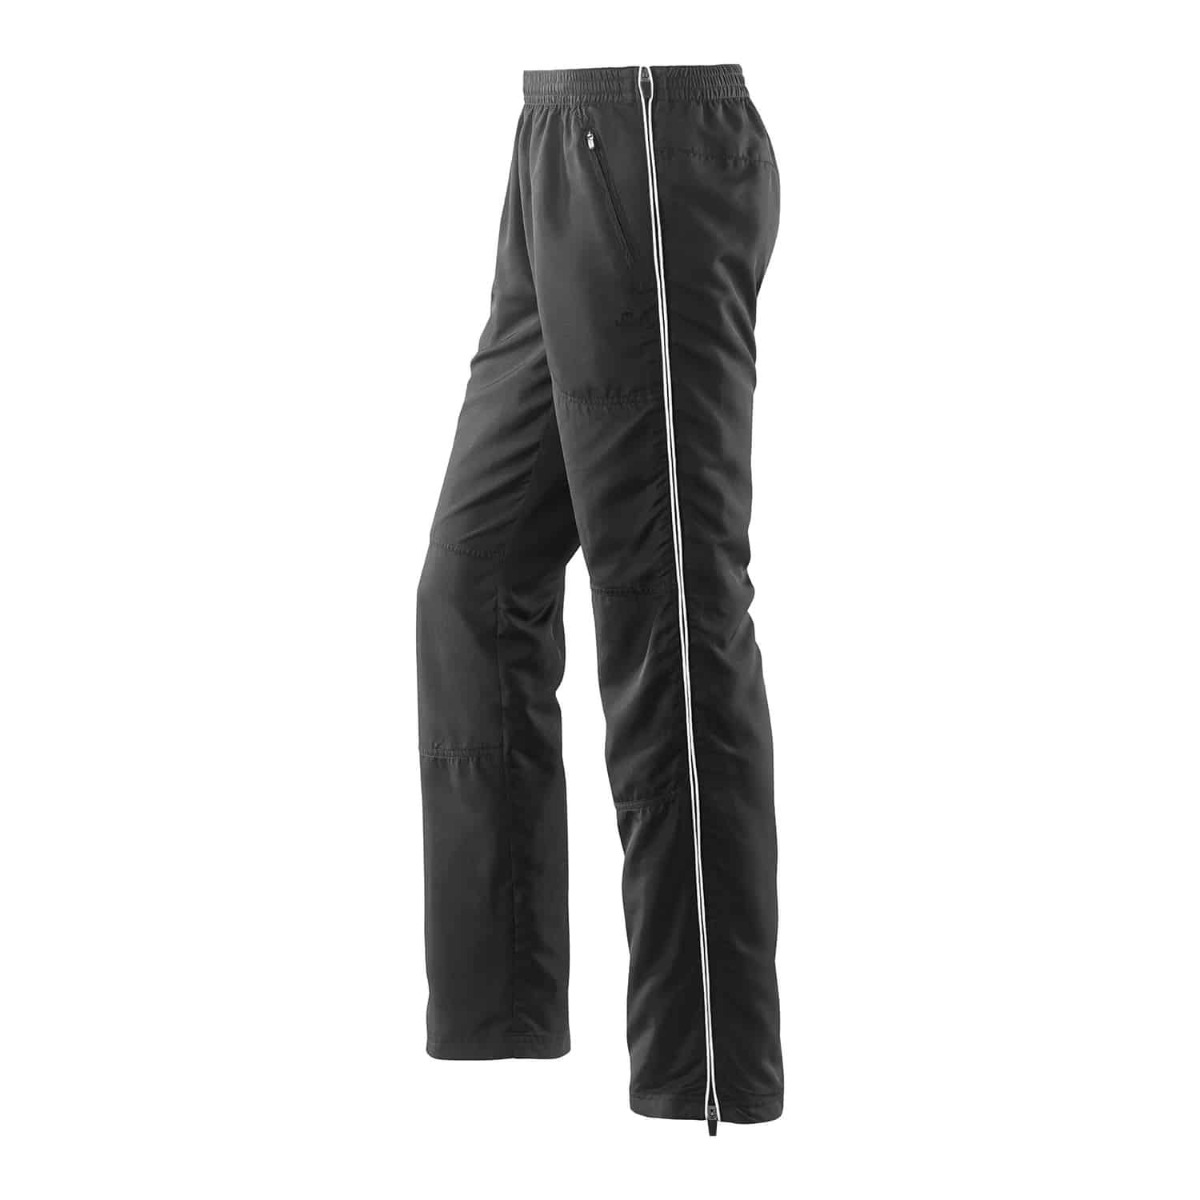 Joy Sportswear Herren Mick Fitnesshose mit Seitenreißverschluss 958 schwarz weiß